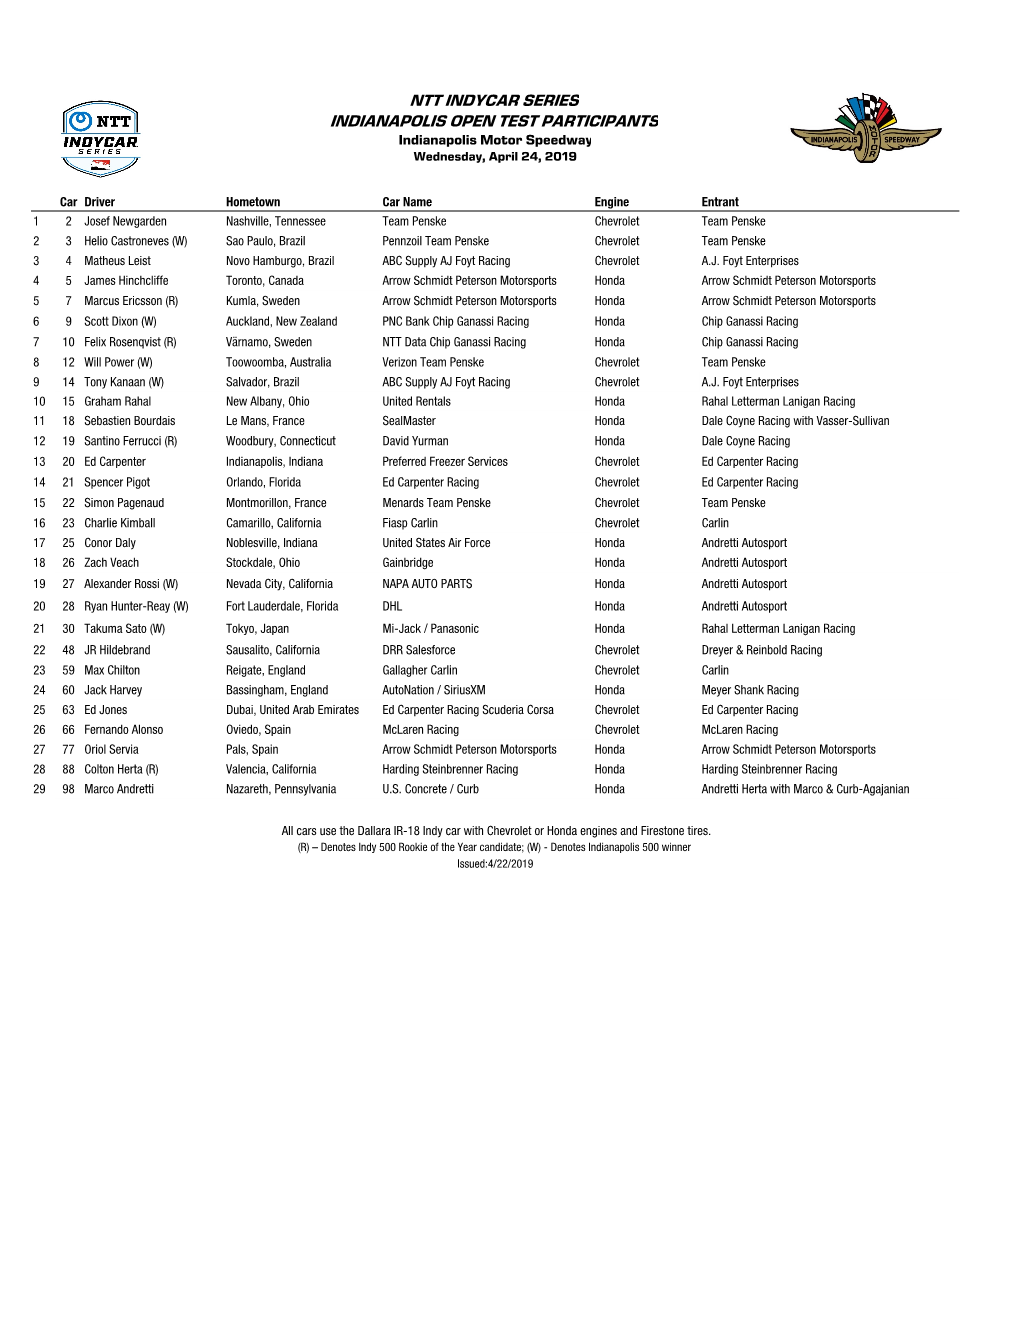 Indy OT Part List 4-18.Xlsx